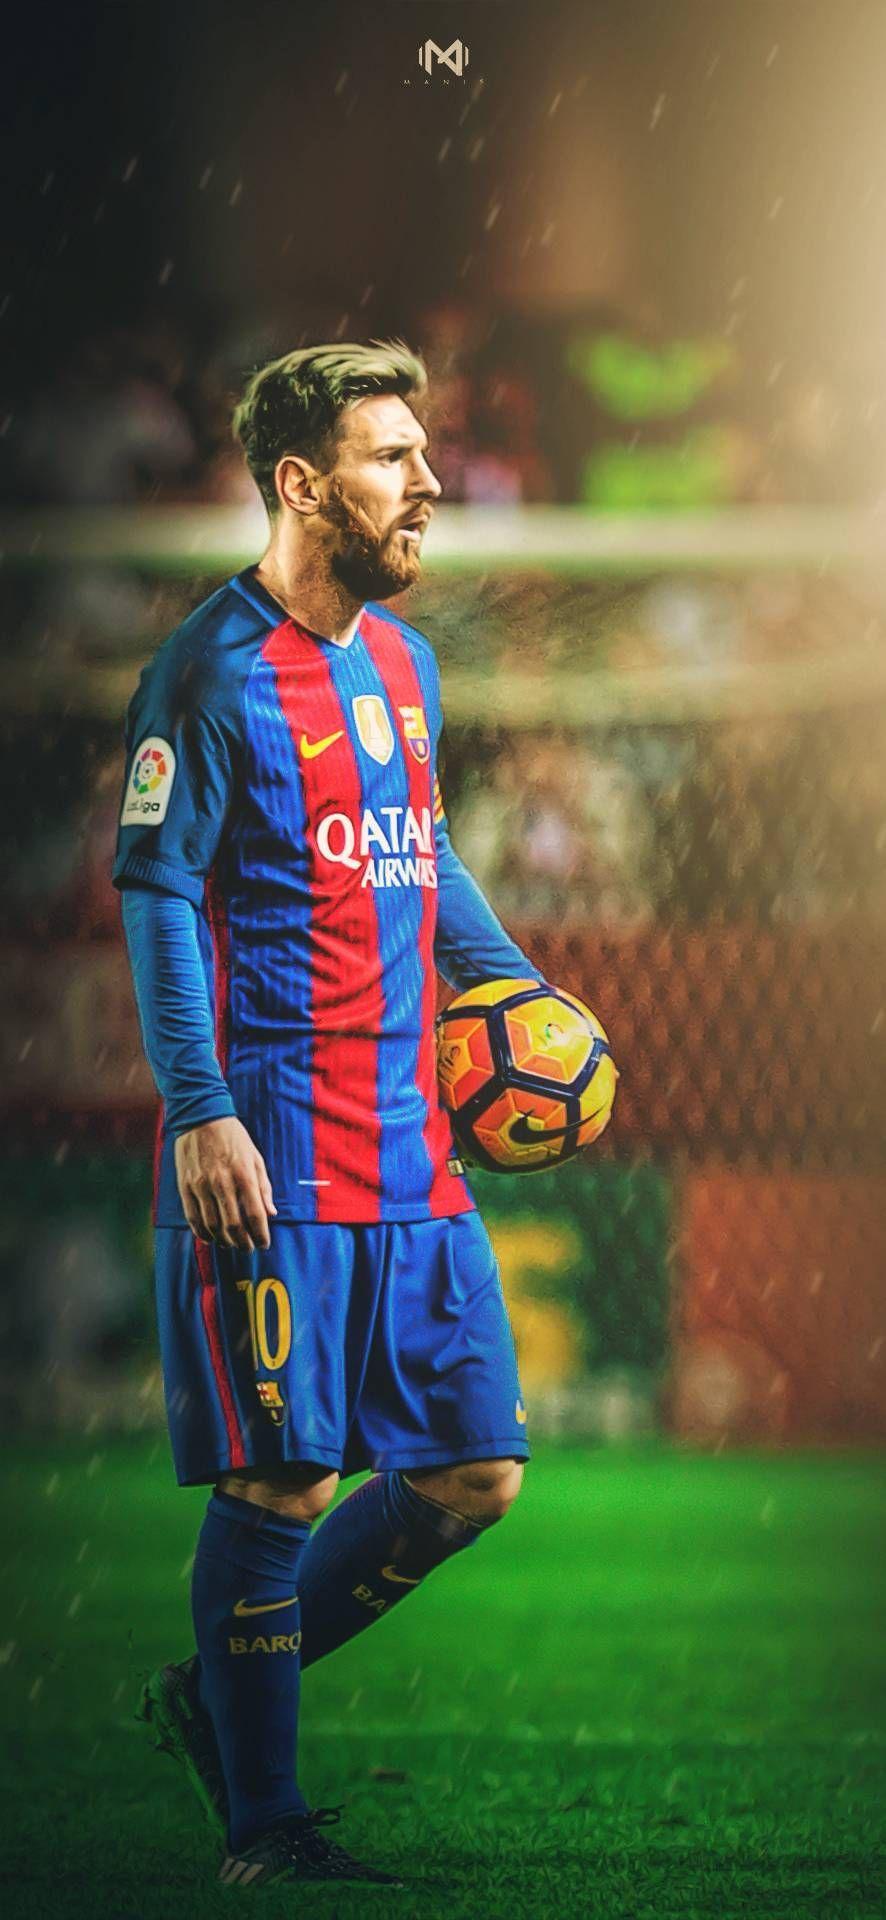 Những hình nền Messi full HD sẽ khiến bạn trầm trồ ngợi khen về độ tinh tế và sắc nét của chúng. Ngắm nhìn những bức ảnh này và cảm nhận được sự hoàn hảo, đặc biệt là khi xem chúng trên màn hình lớn.